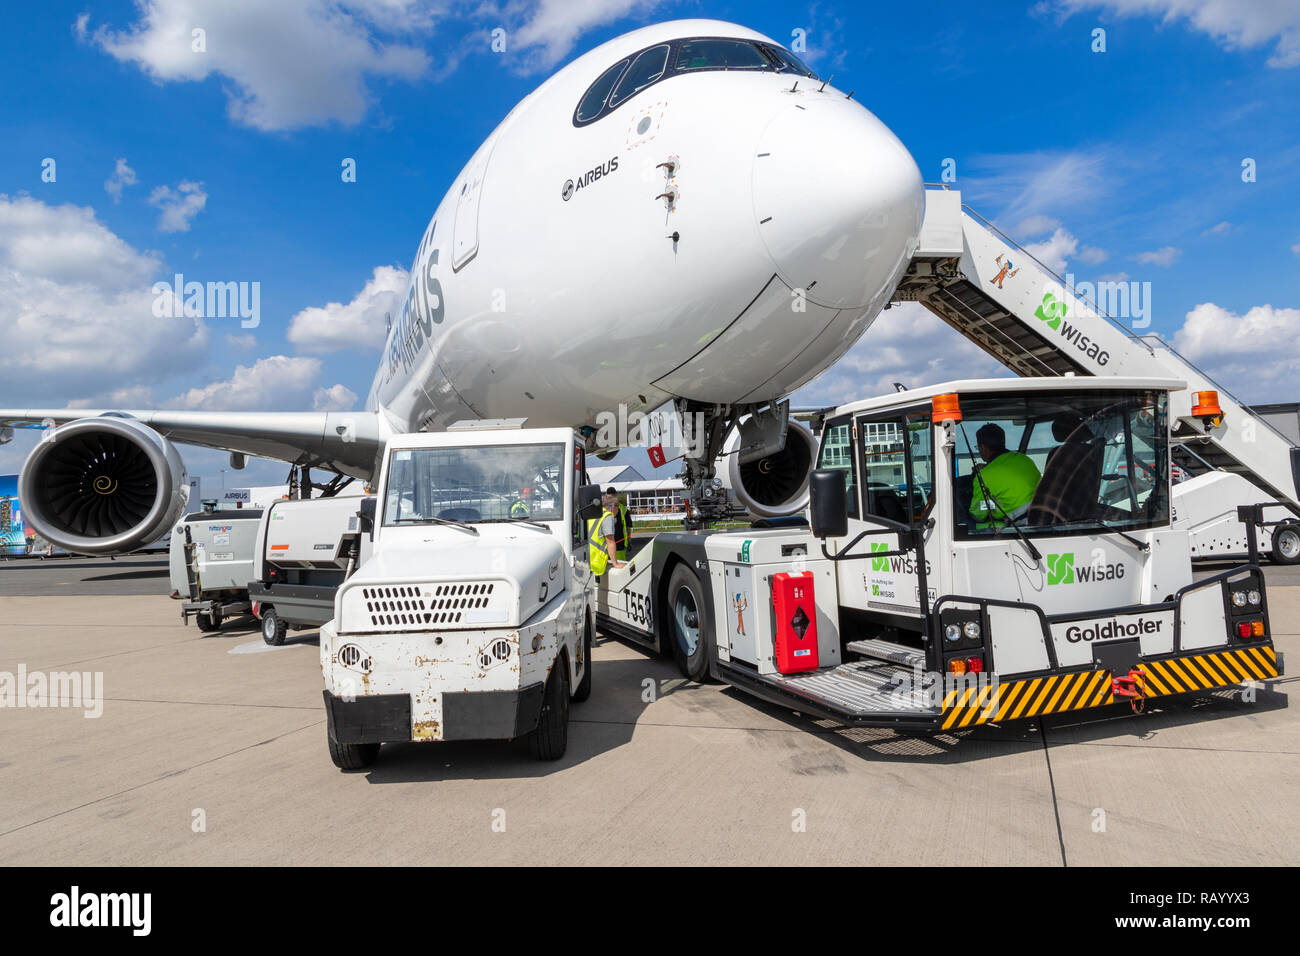 BERLIN, DEUTSCHLAND - Apr 27, 2018: Neue moderne Airbus A350 XWB Passenger Jet Flug von einem Flughafen Berlin-Schönefeld Zugfahrzeug auf Int abgeschleppt werden. Stockfoto